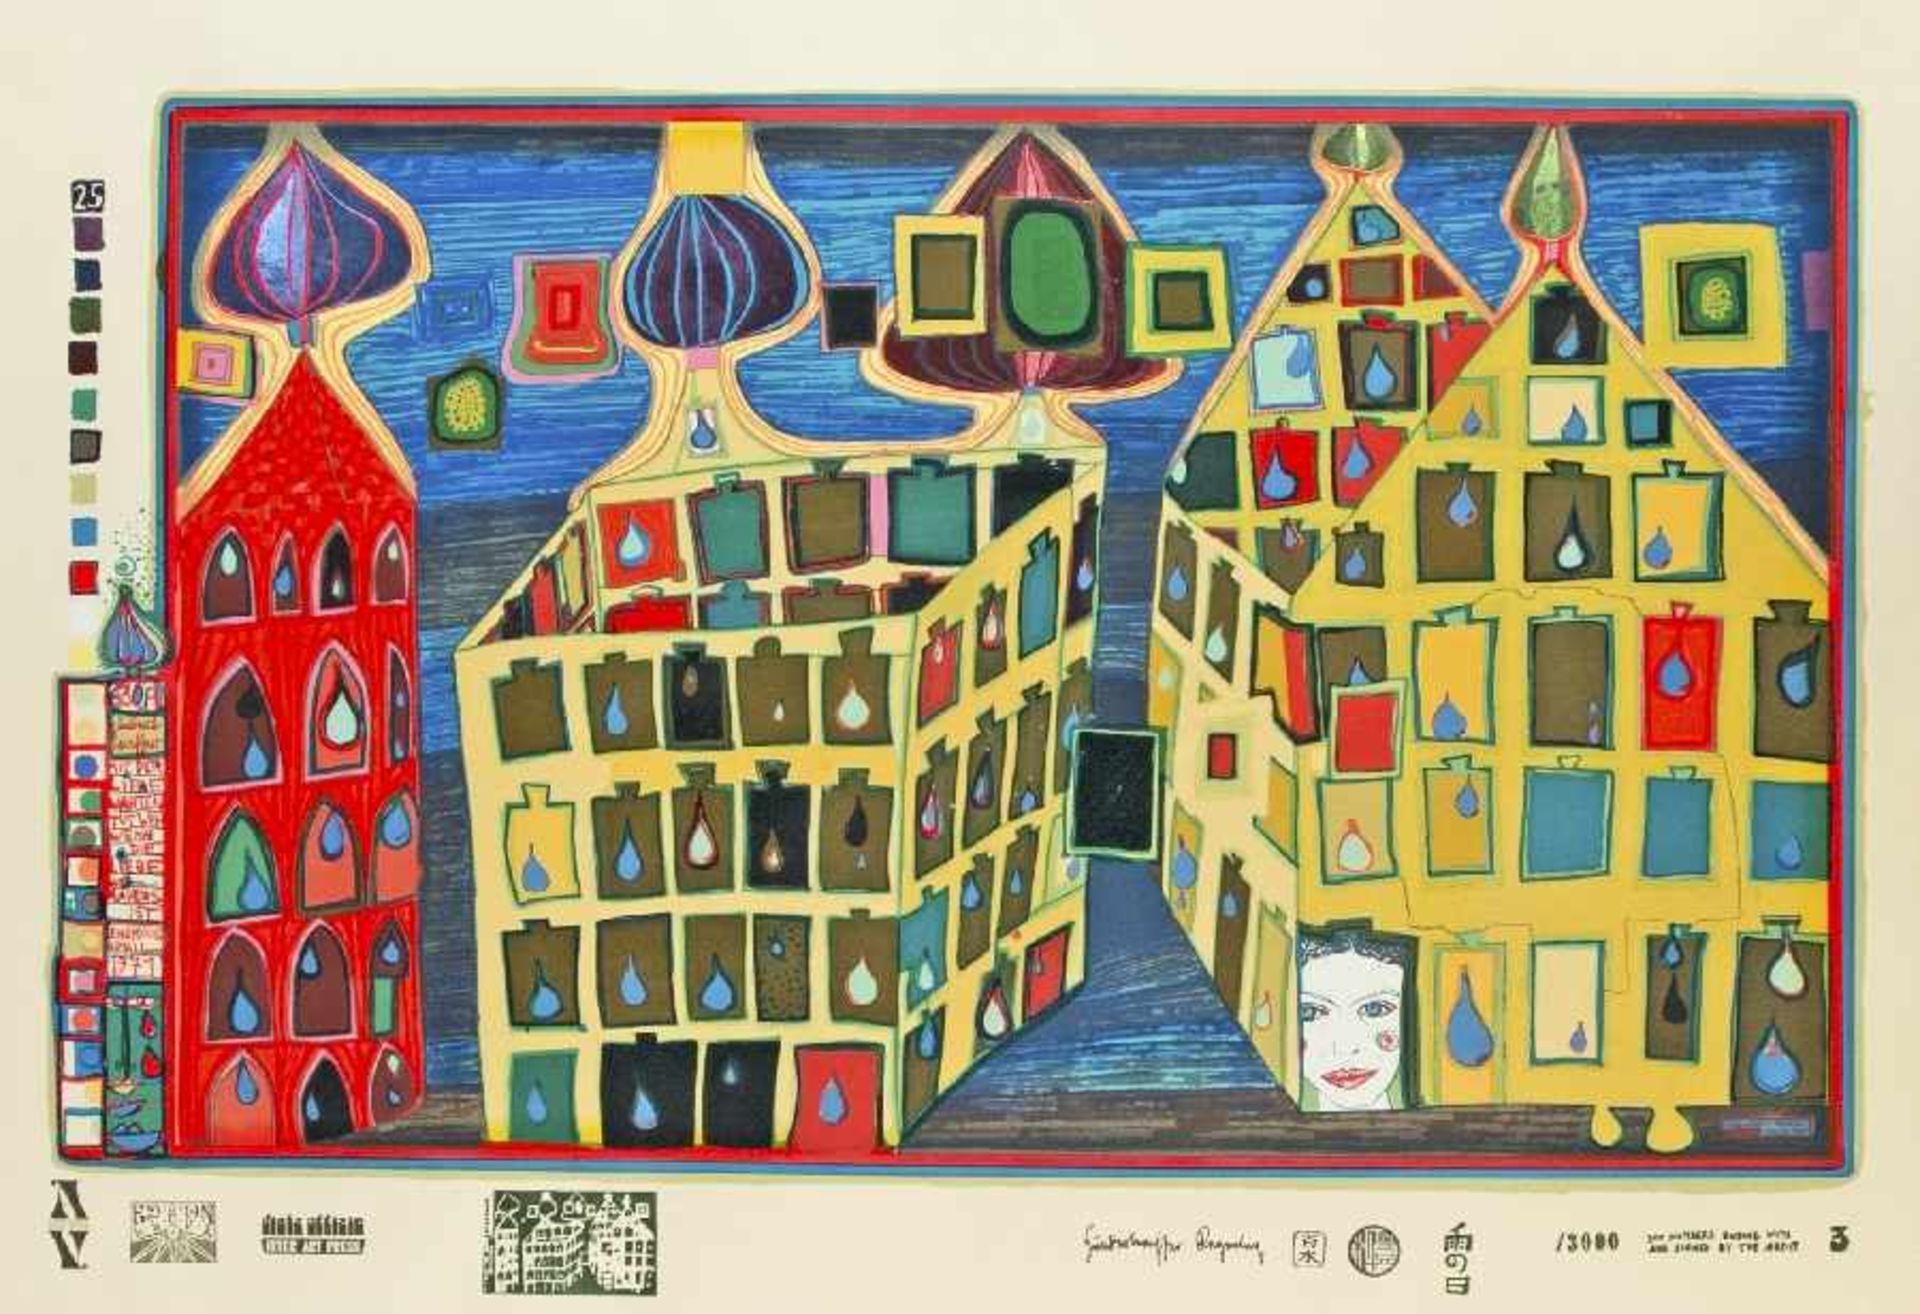 Friedensreich Hundertwasser 1928 Wien - 2000 Mit der Liebe warten tut weh, wenn die Liebe woanders